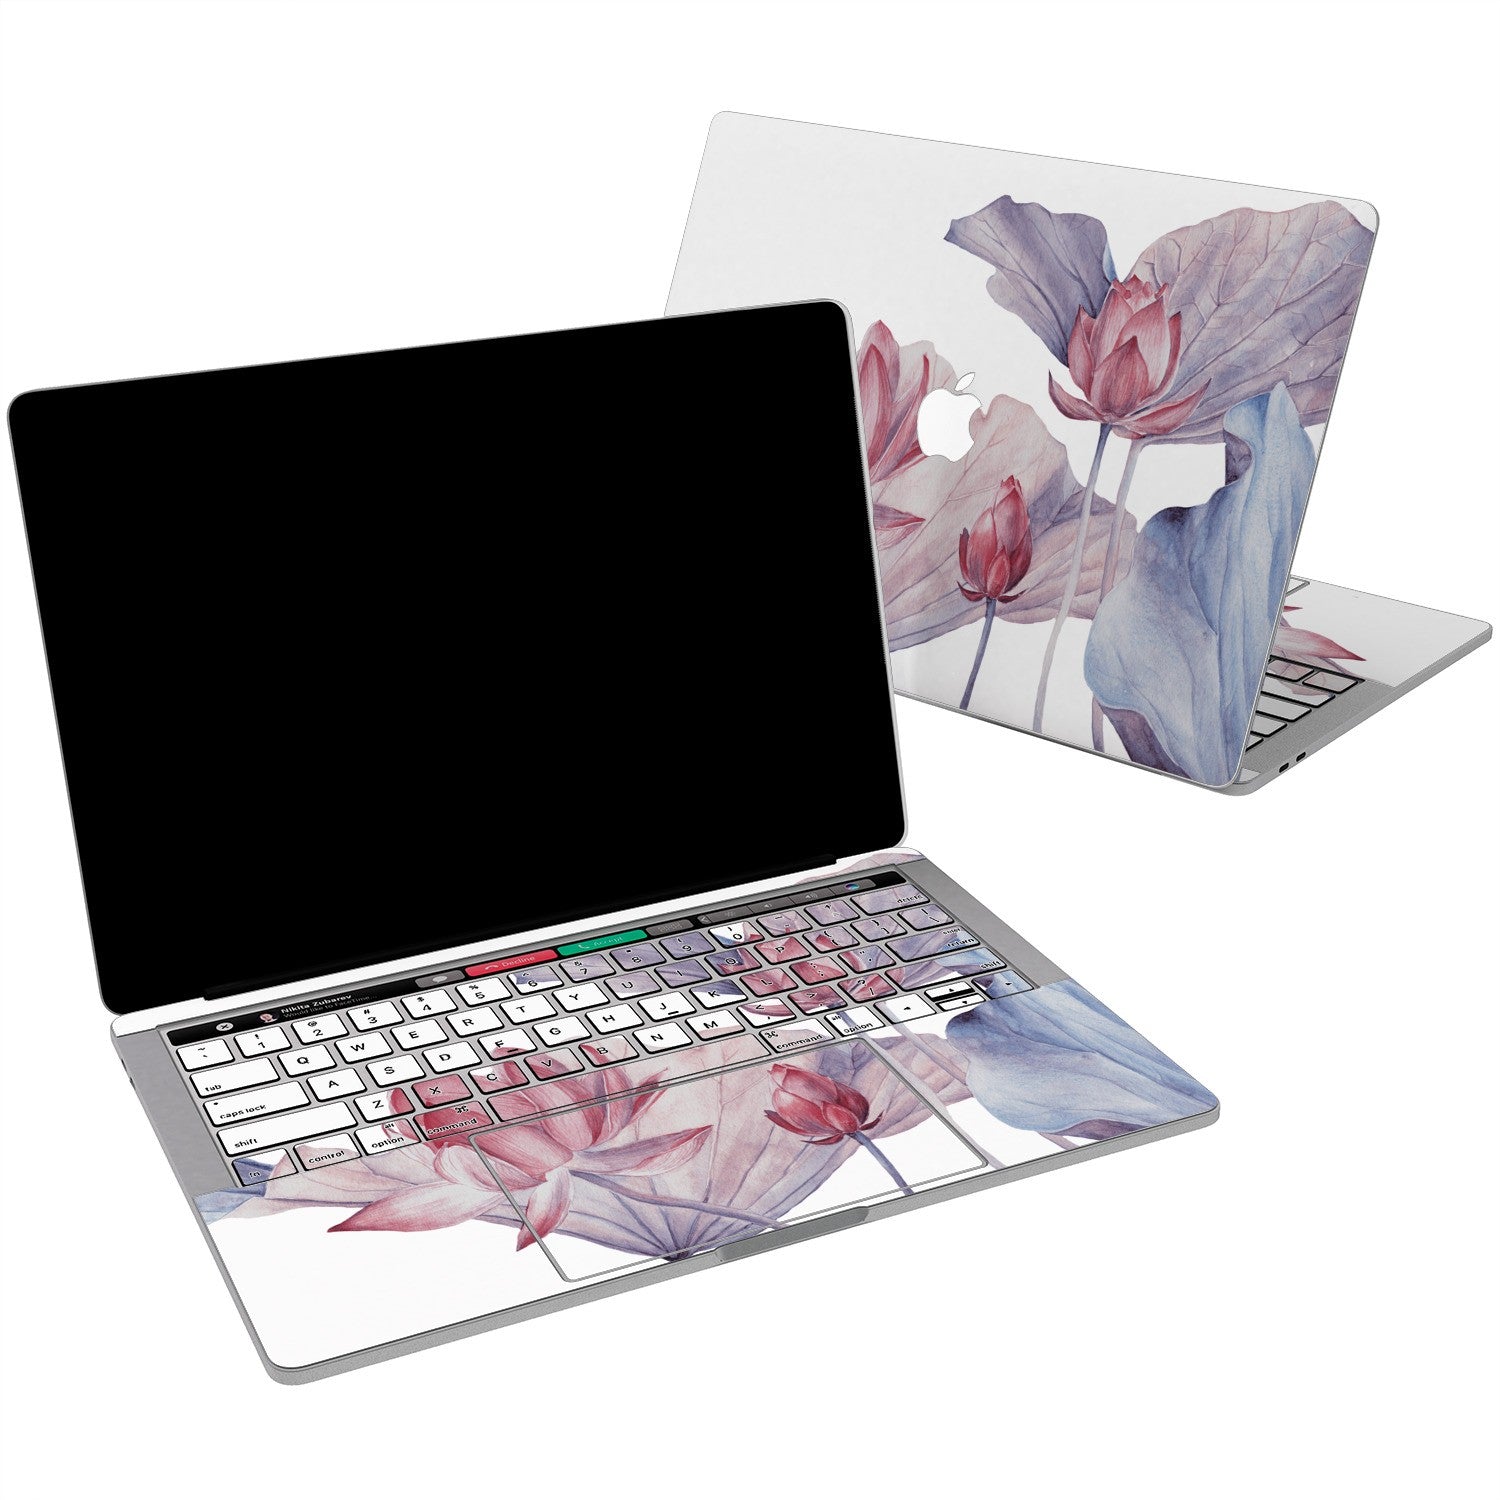 Lex Altern Vinyl MacBook Skin Tender Pink Lotuses for your Laptop Apple Macbook.